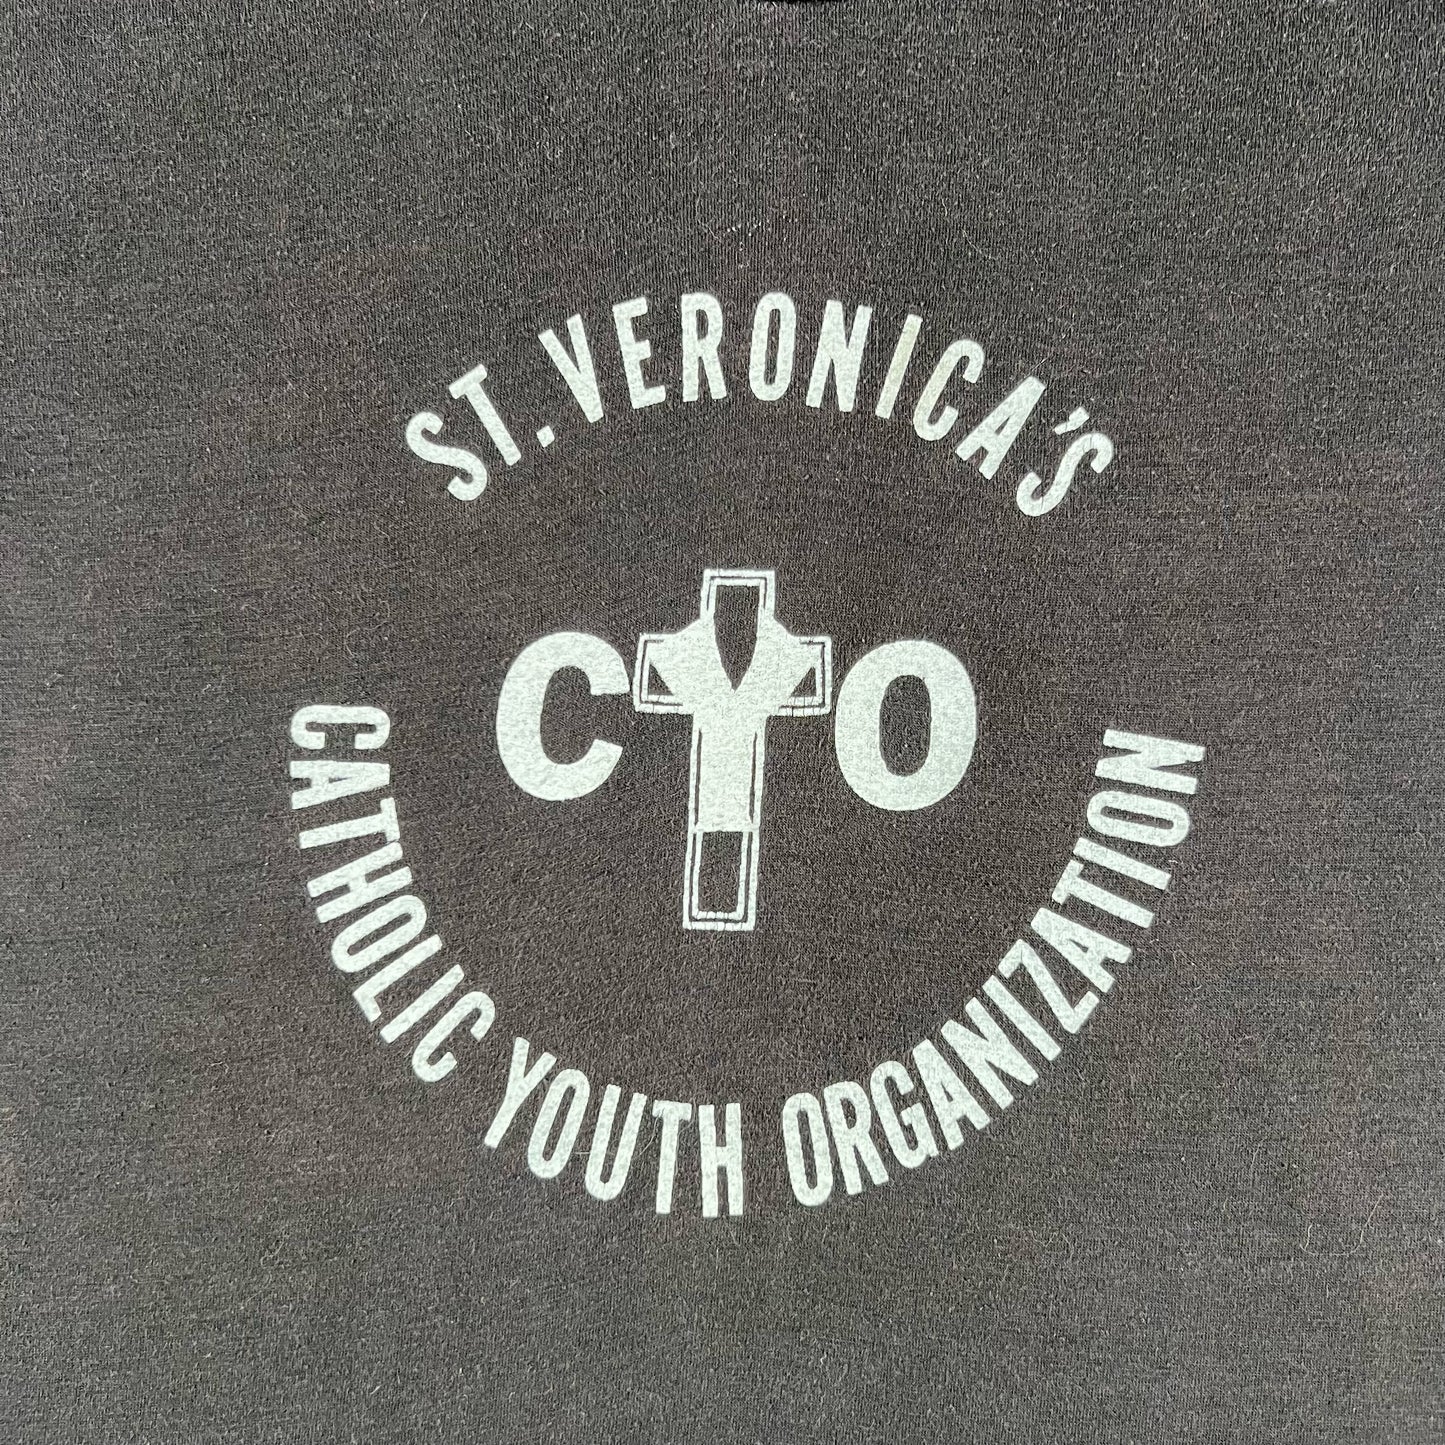 80s Catholic Youth Organization Tee- S